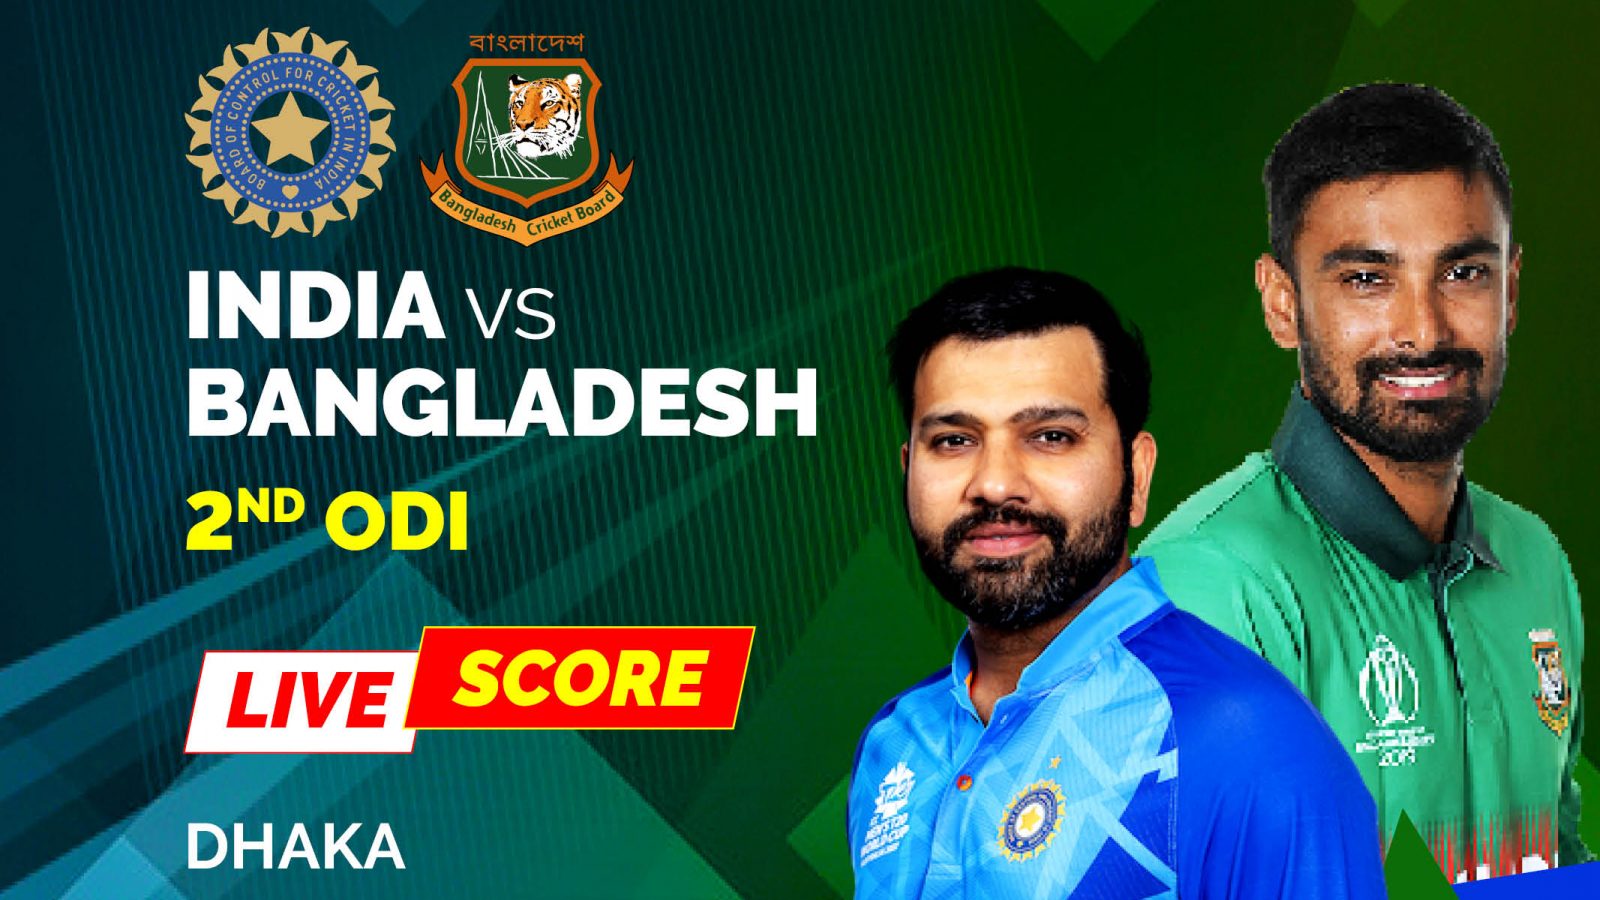 India vs Bangladesh Highlights 2nd ODI IND Lose to BAN Despite a